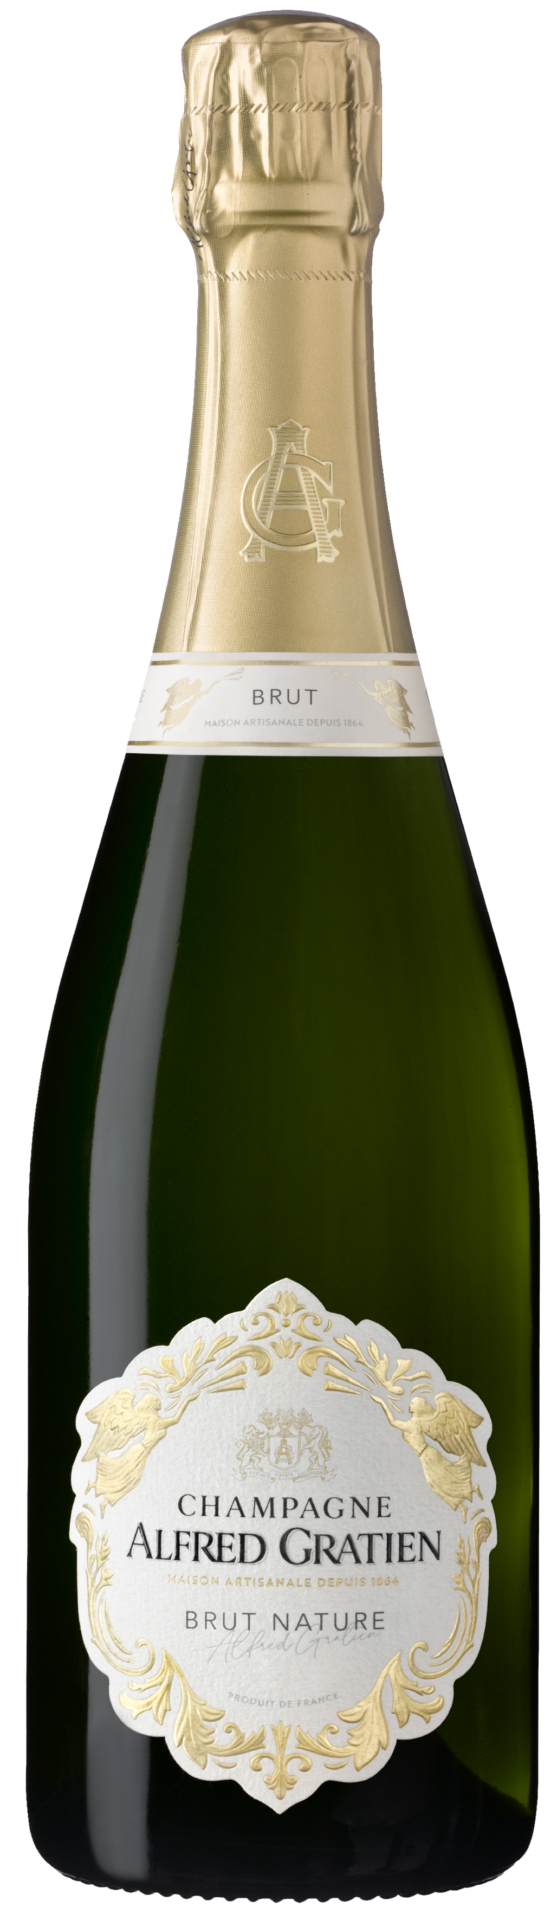 La bouteille de champagne brut nature d'Alfred Gratien.